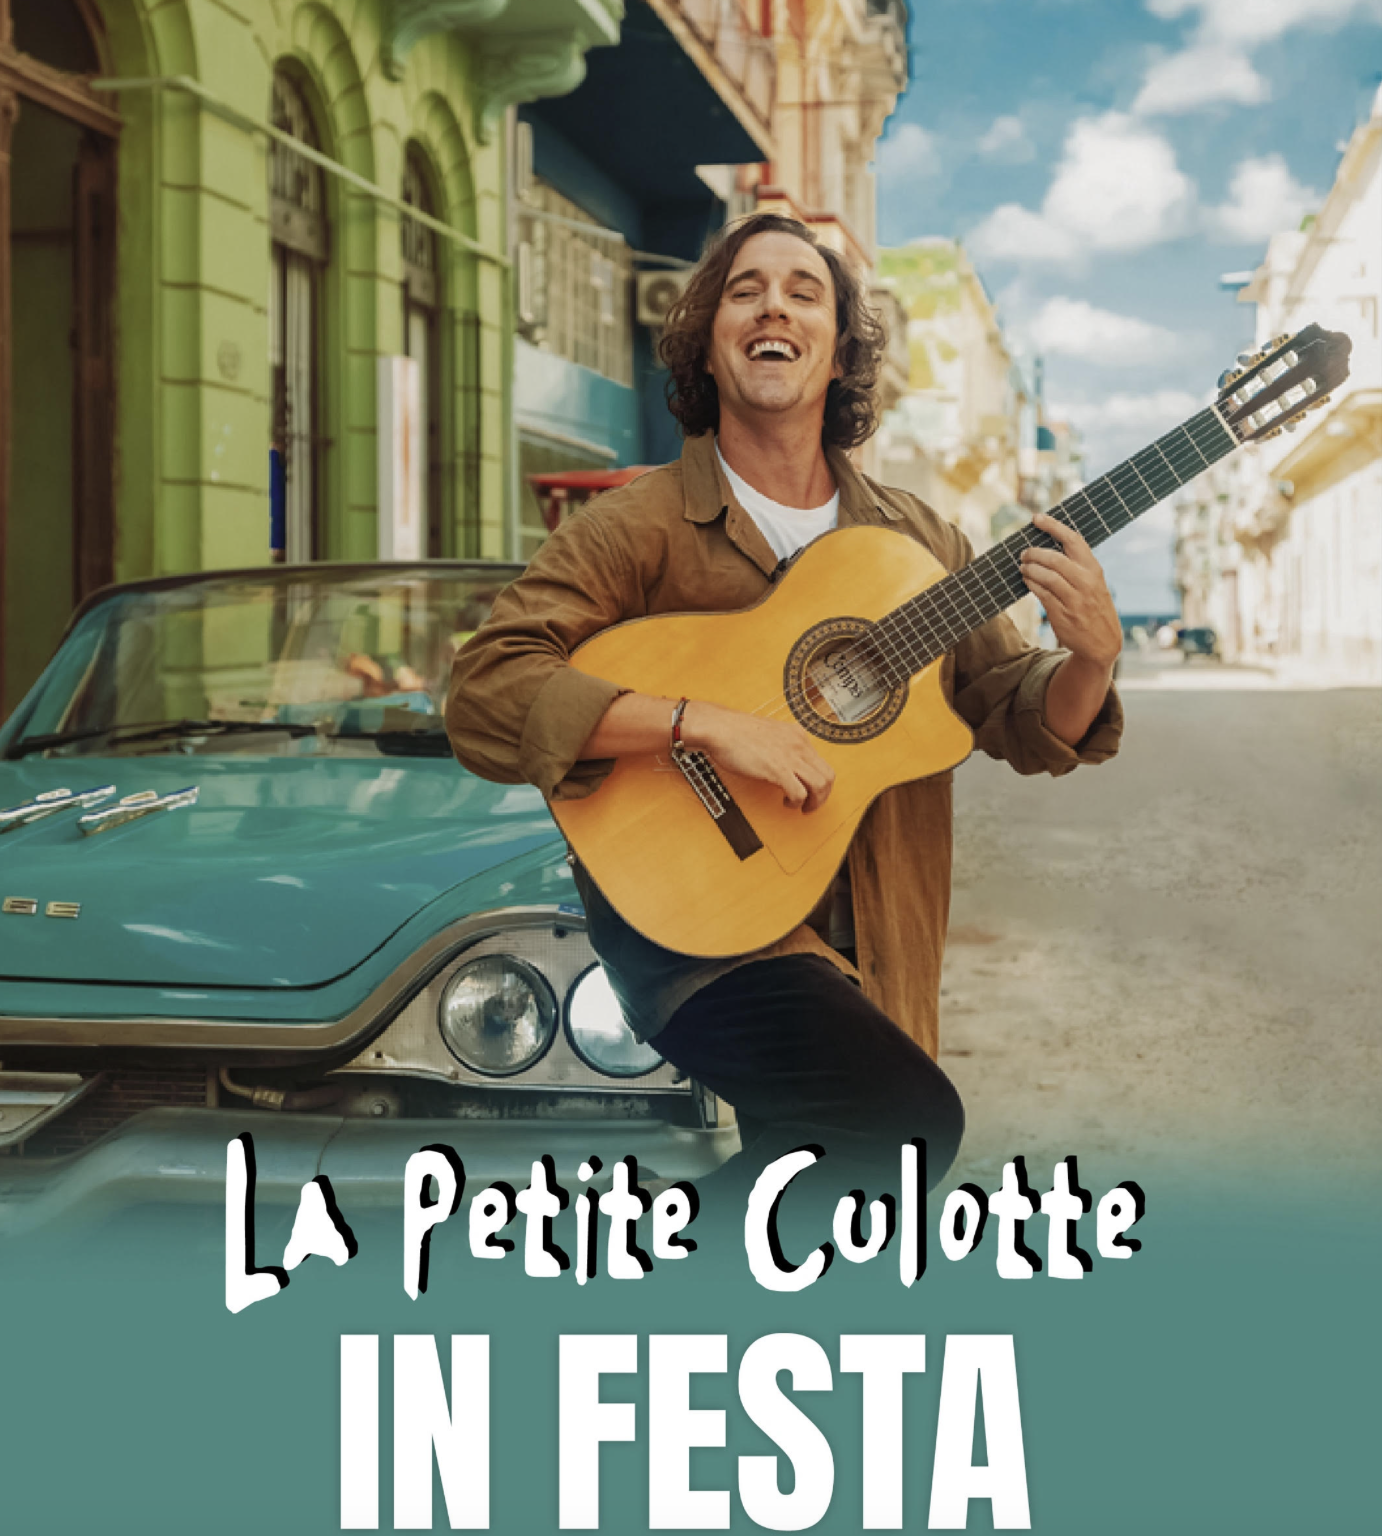 In festa, le nouvel album de La Petite Culotte - Just Music